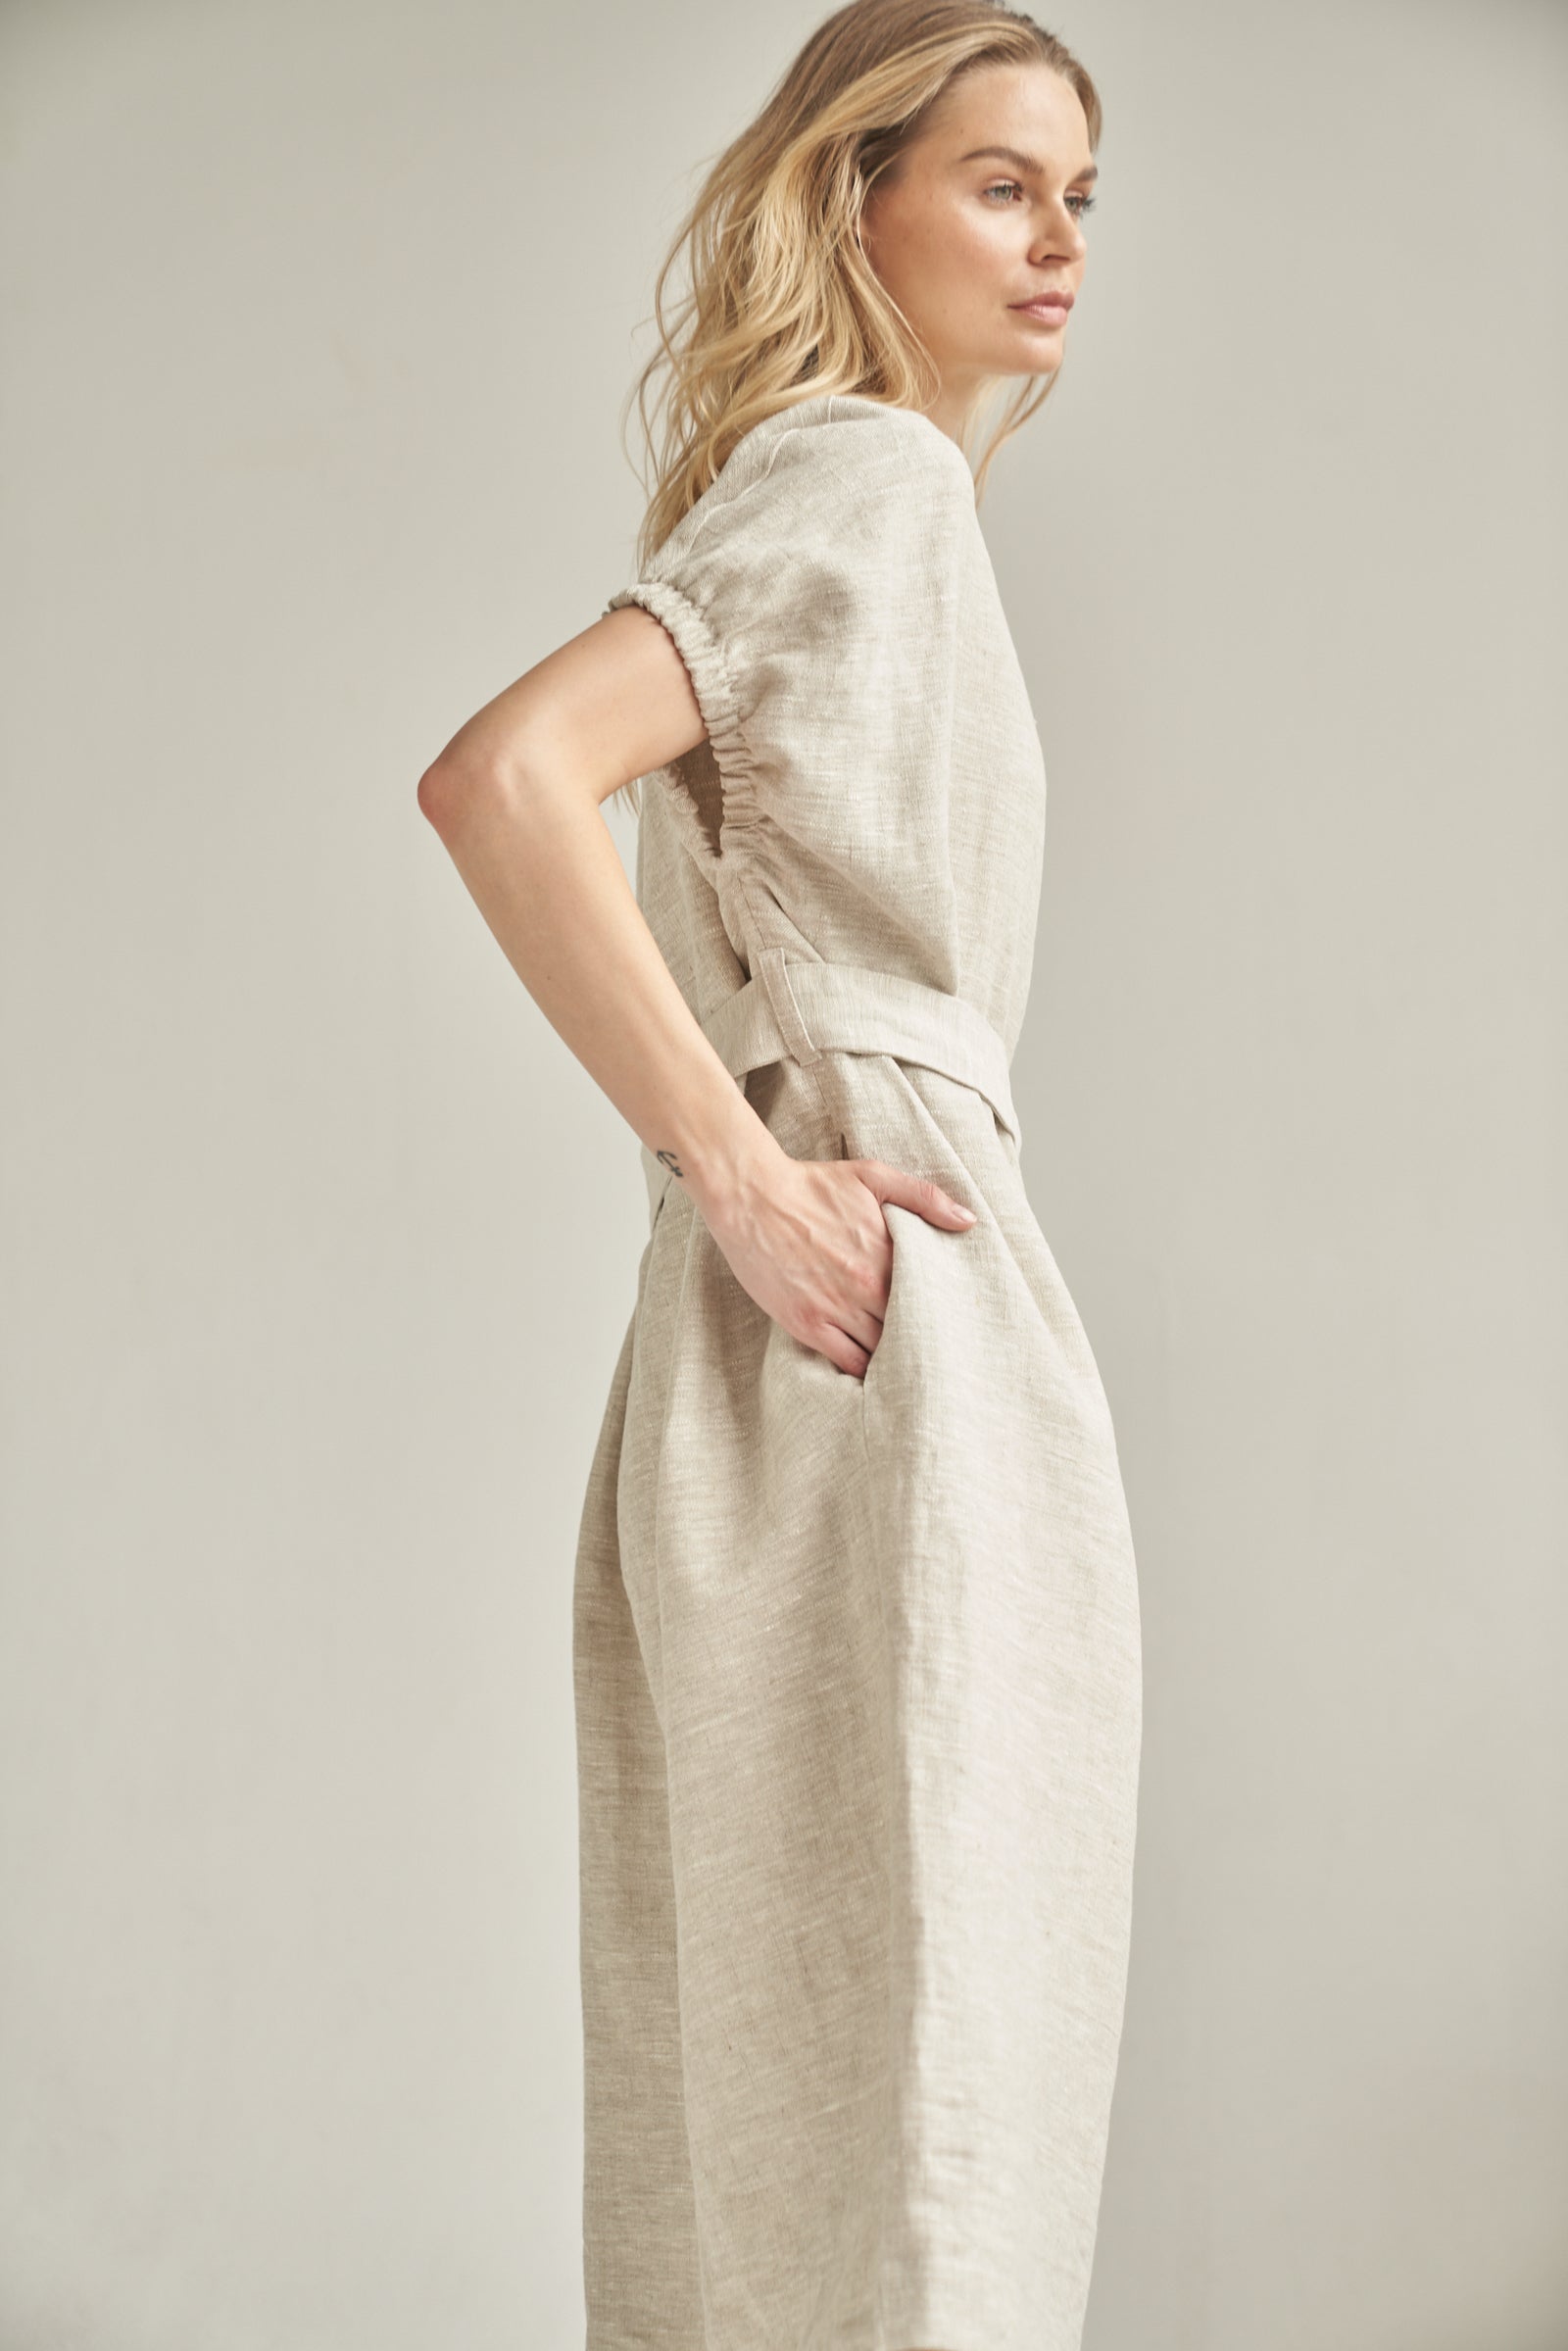 Das Oversize-Kleid aus Leinen in der Farbe natur wird von einem blonden Model getragen. Sie steht seitlich vor einem hellen Hintergrund und hat ihre rechte Hand in der integrierten Eingrifftasche.